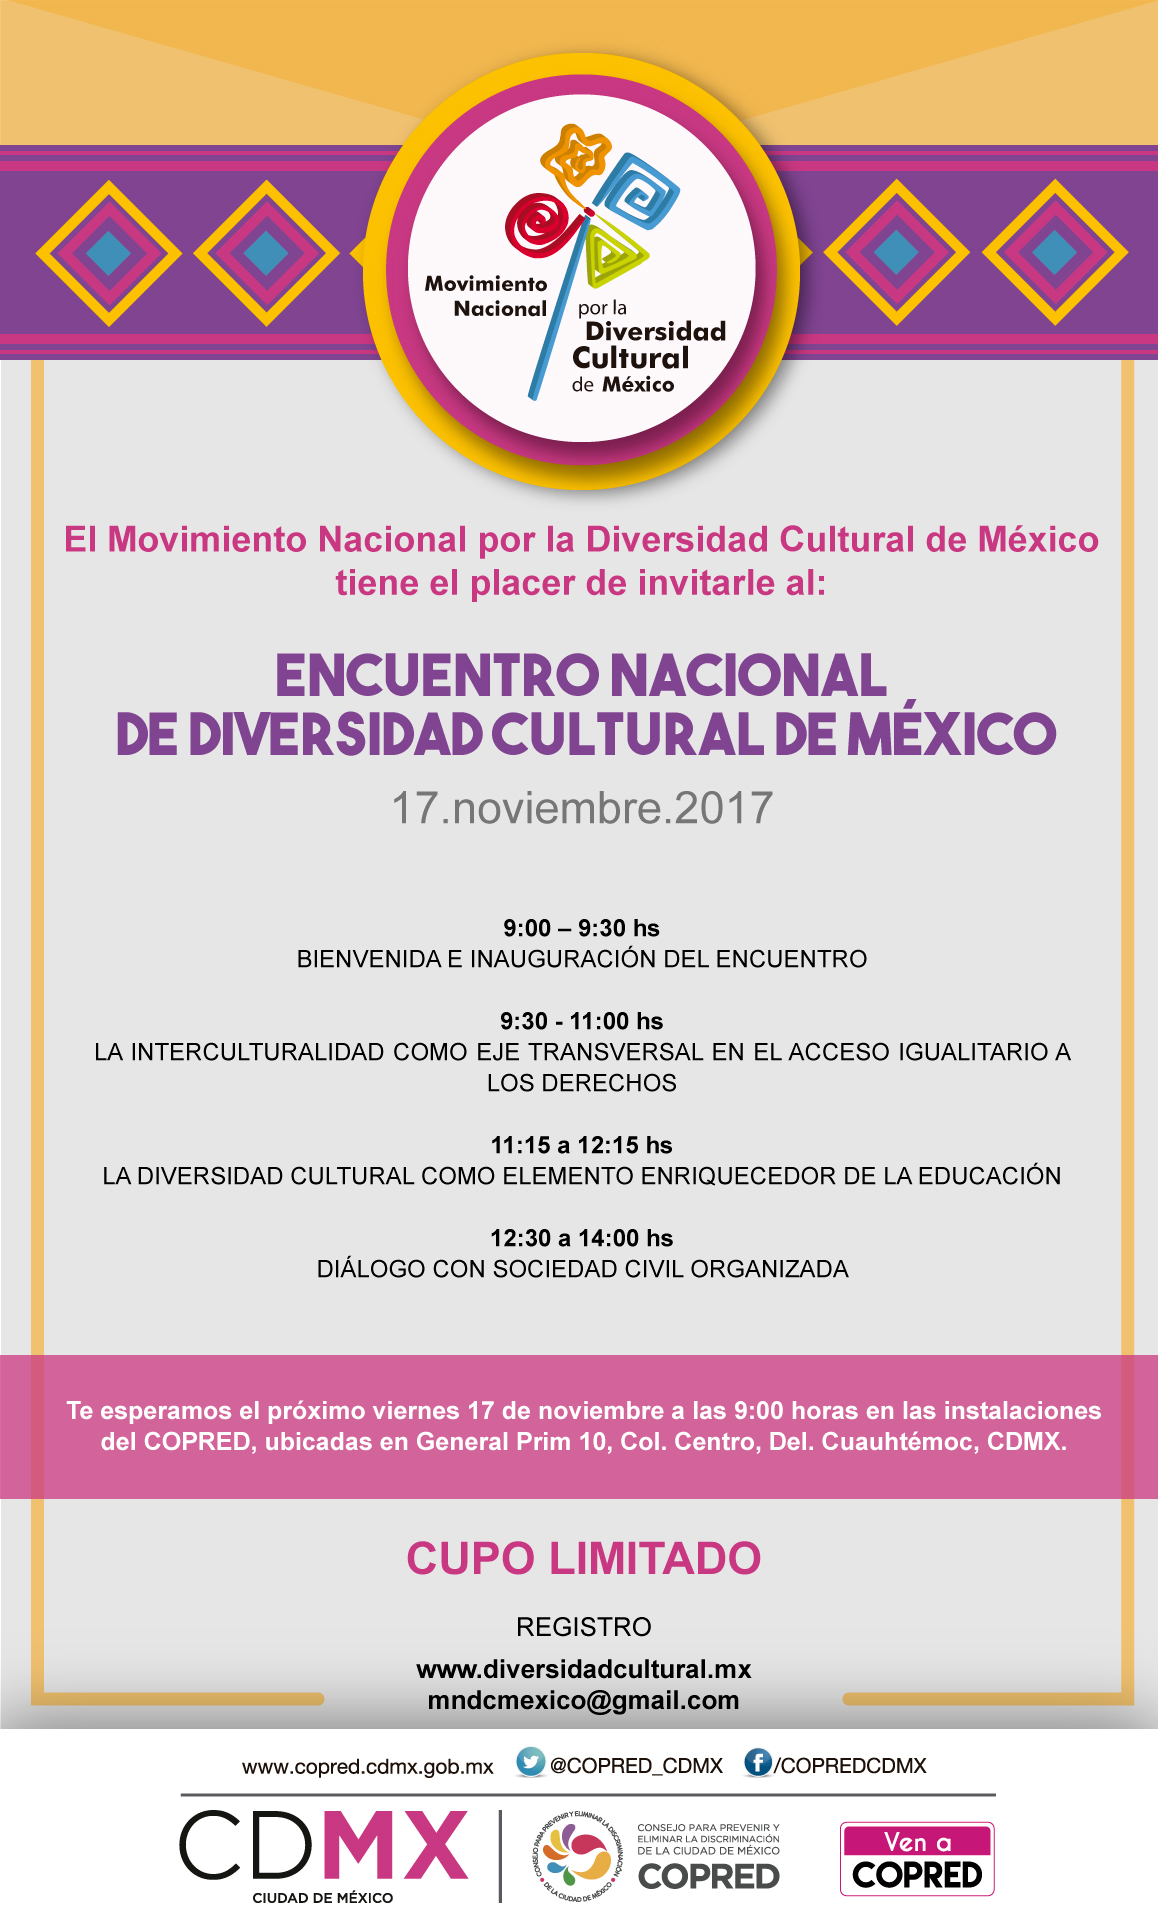  Encuentro Nacional de Diversidad Cultural en México.